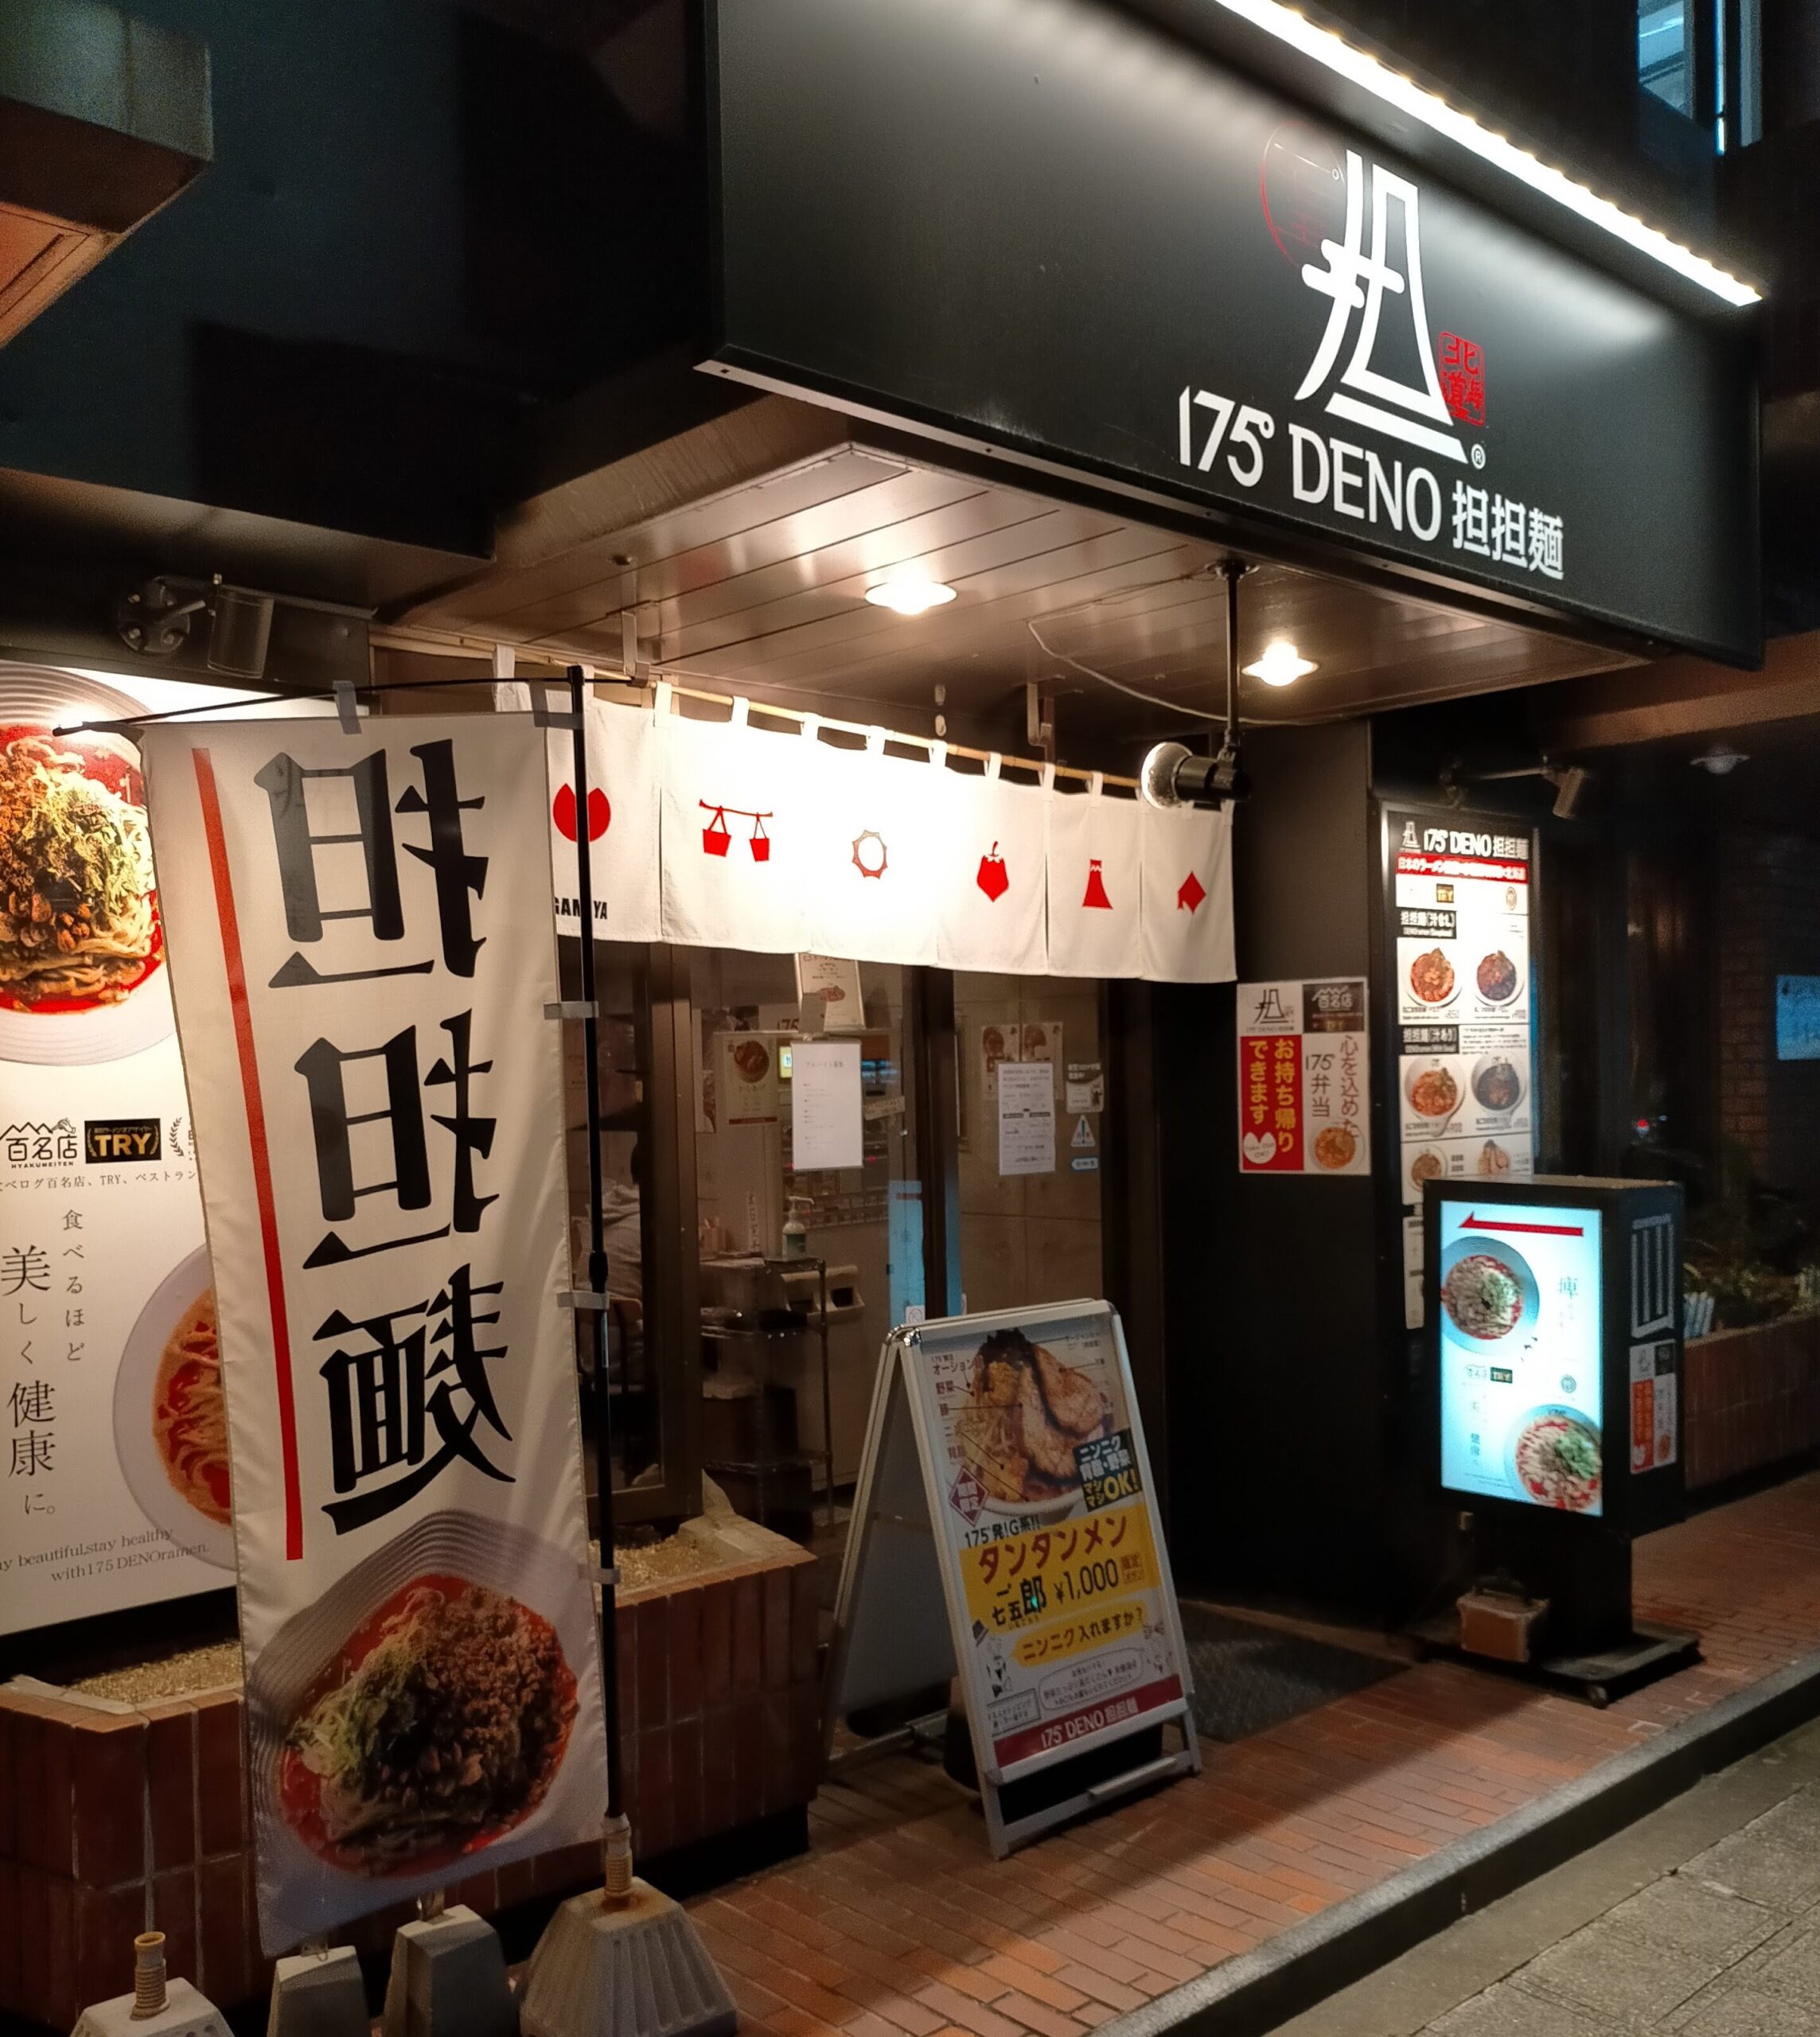 175°DENO担担麺